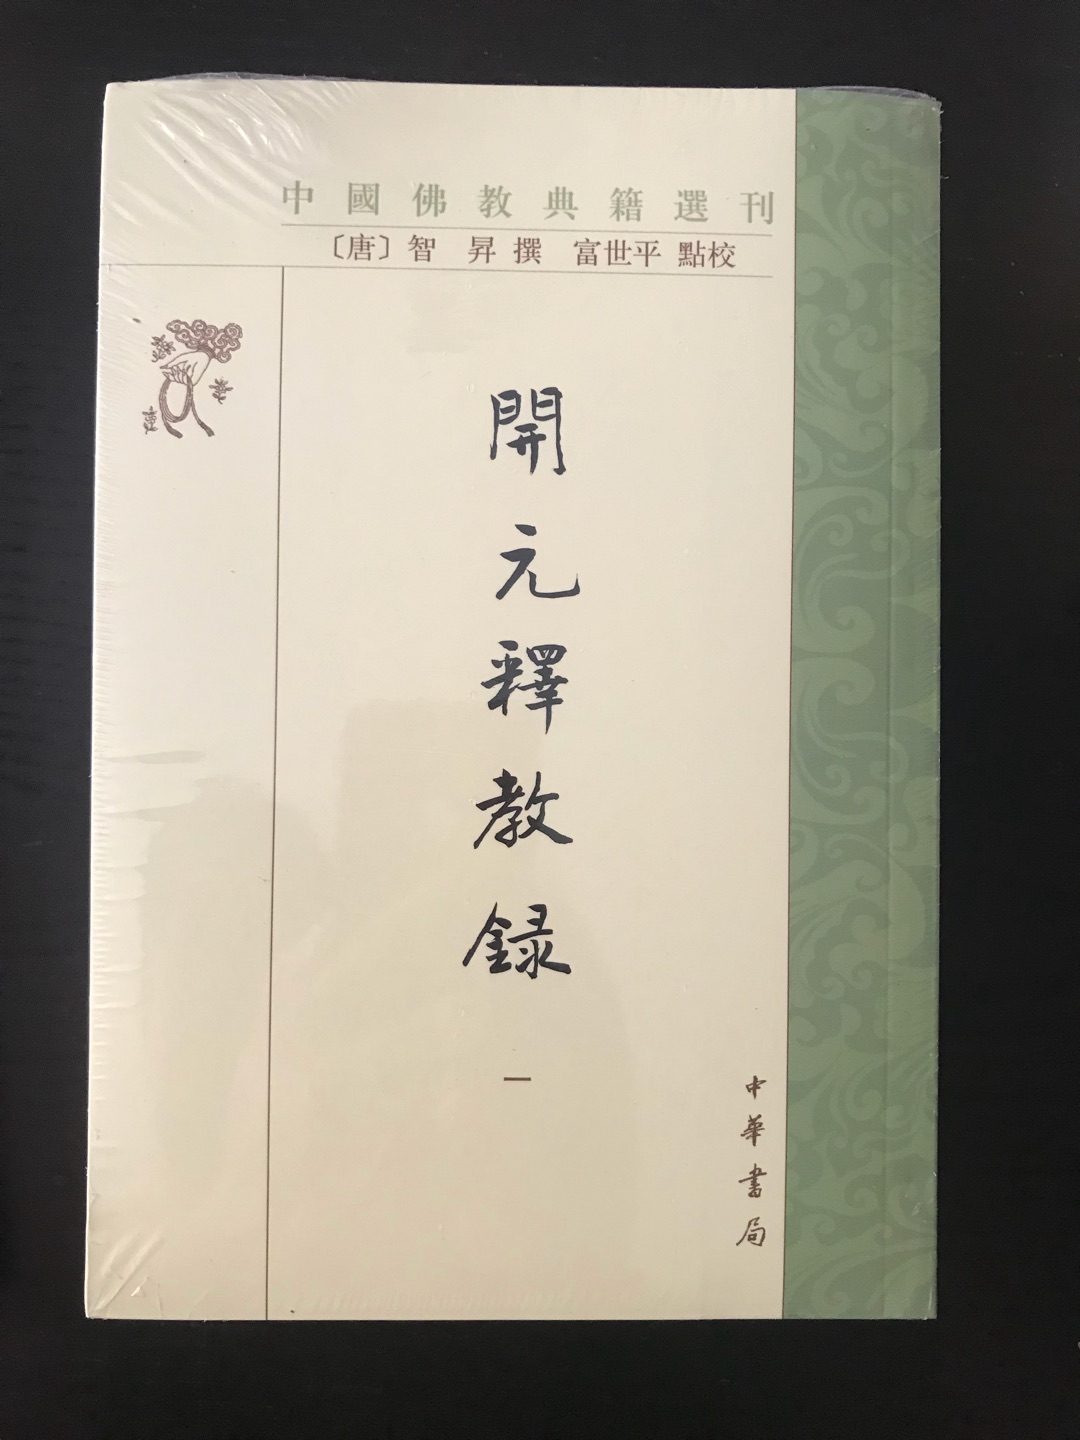 中华书局这套书今年出版了不少新的，之前是《北山录校注》，这次把这么经典的大部头也推出来了，功德无量！